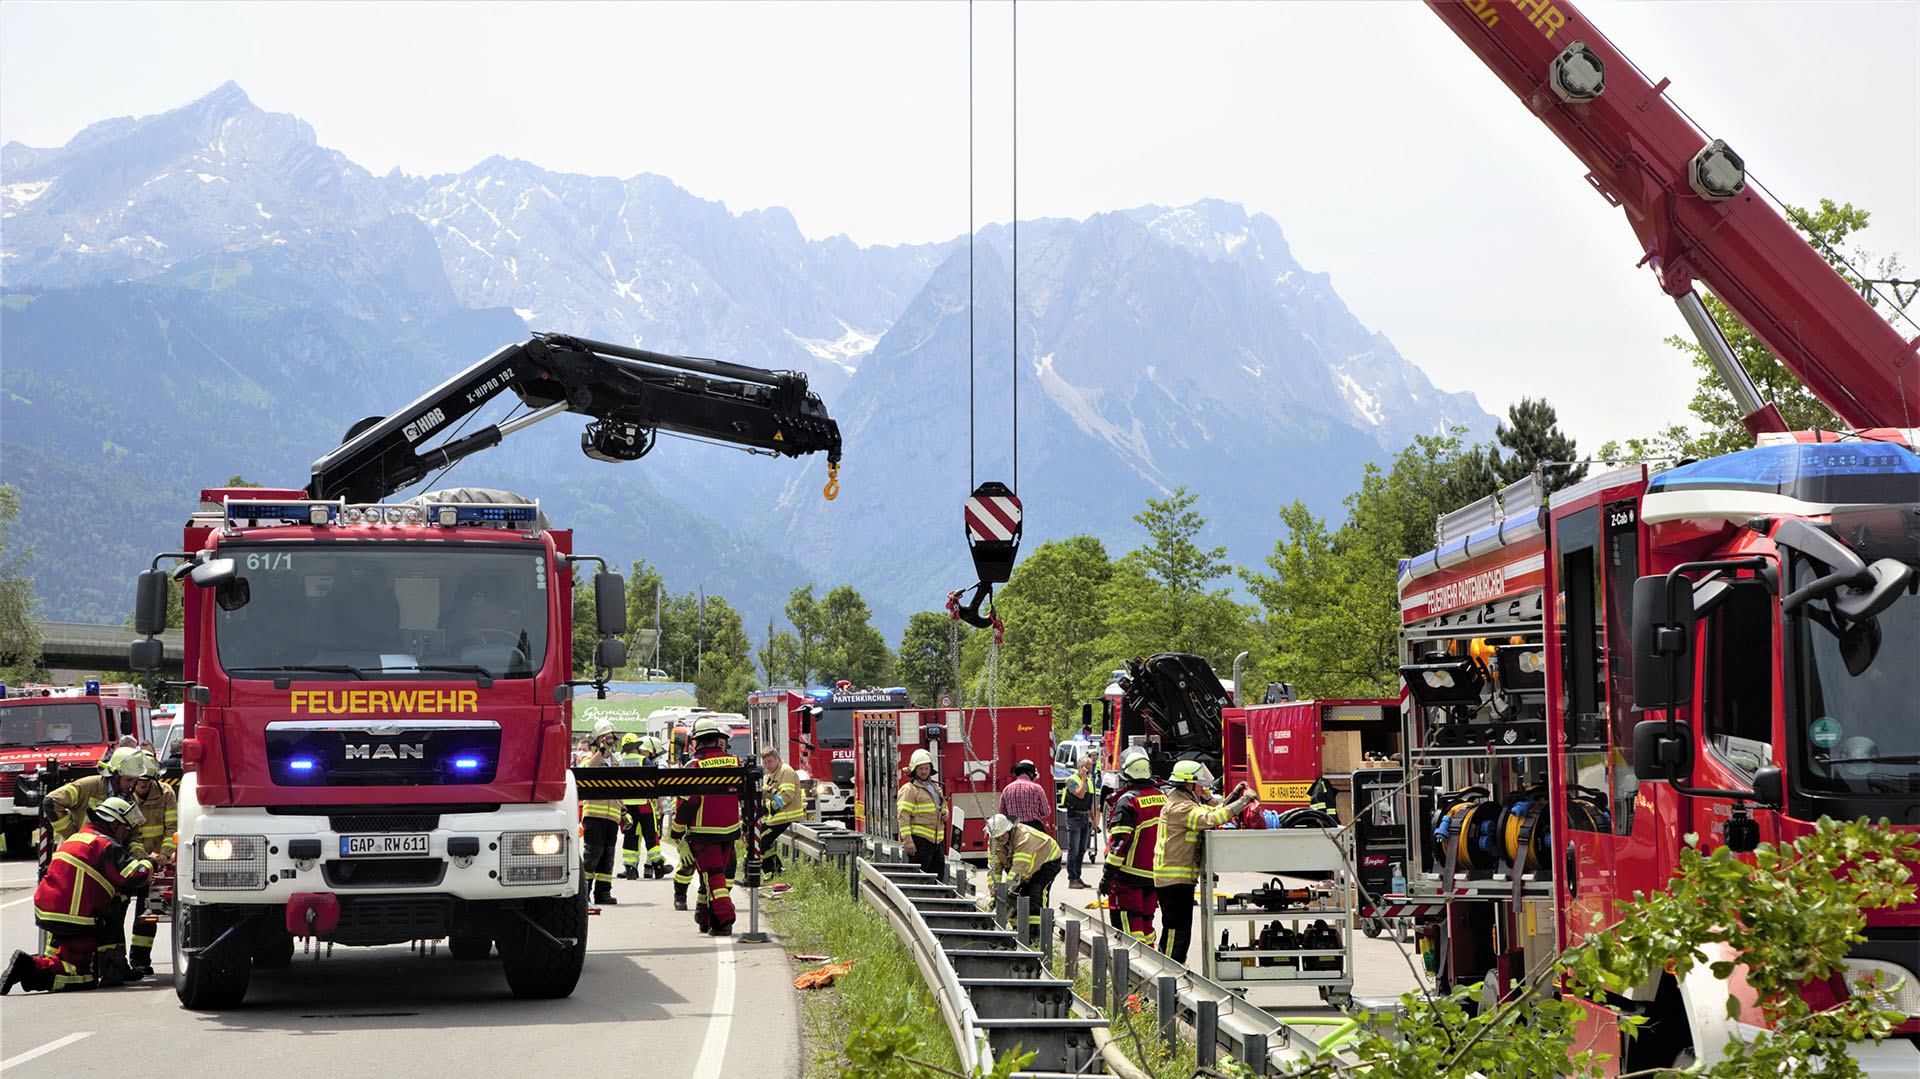 Am 3. Juni 2022 wurden Rettungskräfte und Feuerwehrautos auf der Autobahn in der Nähe der Unfallstelle eines entgleisten Zuges bei Bergrein bei Karmisch-Bartenkirchen in Süddeutschland gesichtet.  (Foto: Joseph Hornsteiner / Münchner Merkur / AFP)